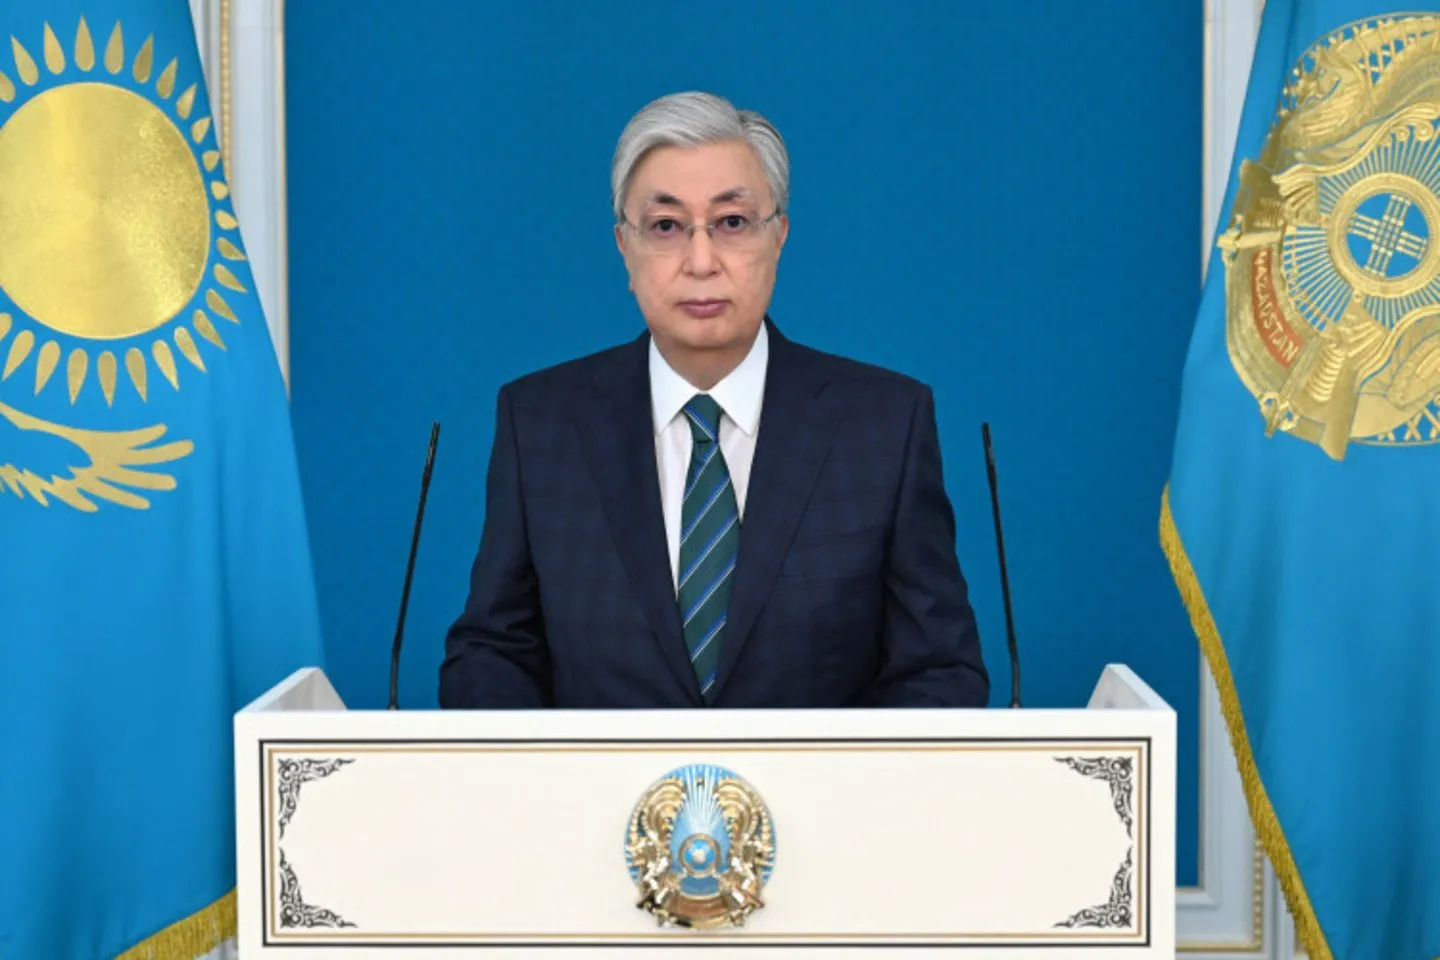 Новости Казахстана / Политика в Казахстане / Президент РК: Мы должны ввести цифровой тенге